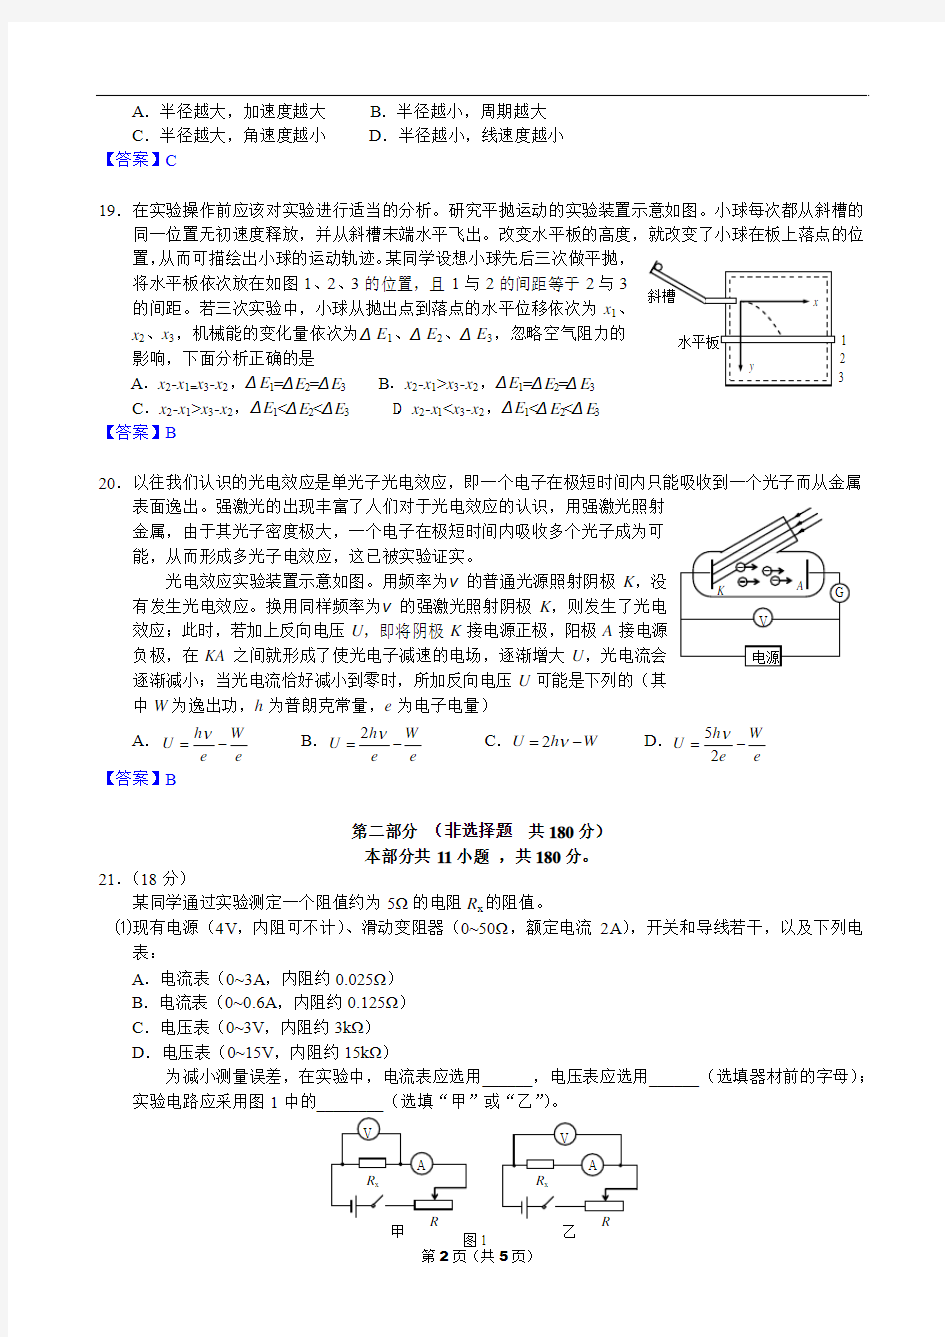 05、2013年高考真题 北京卷 物理 精校版